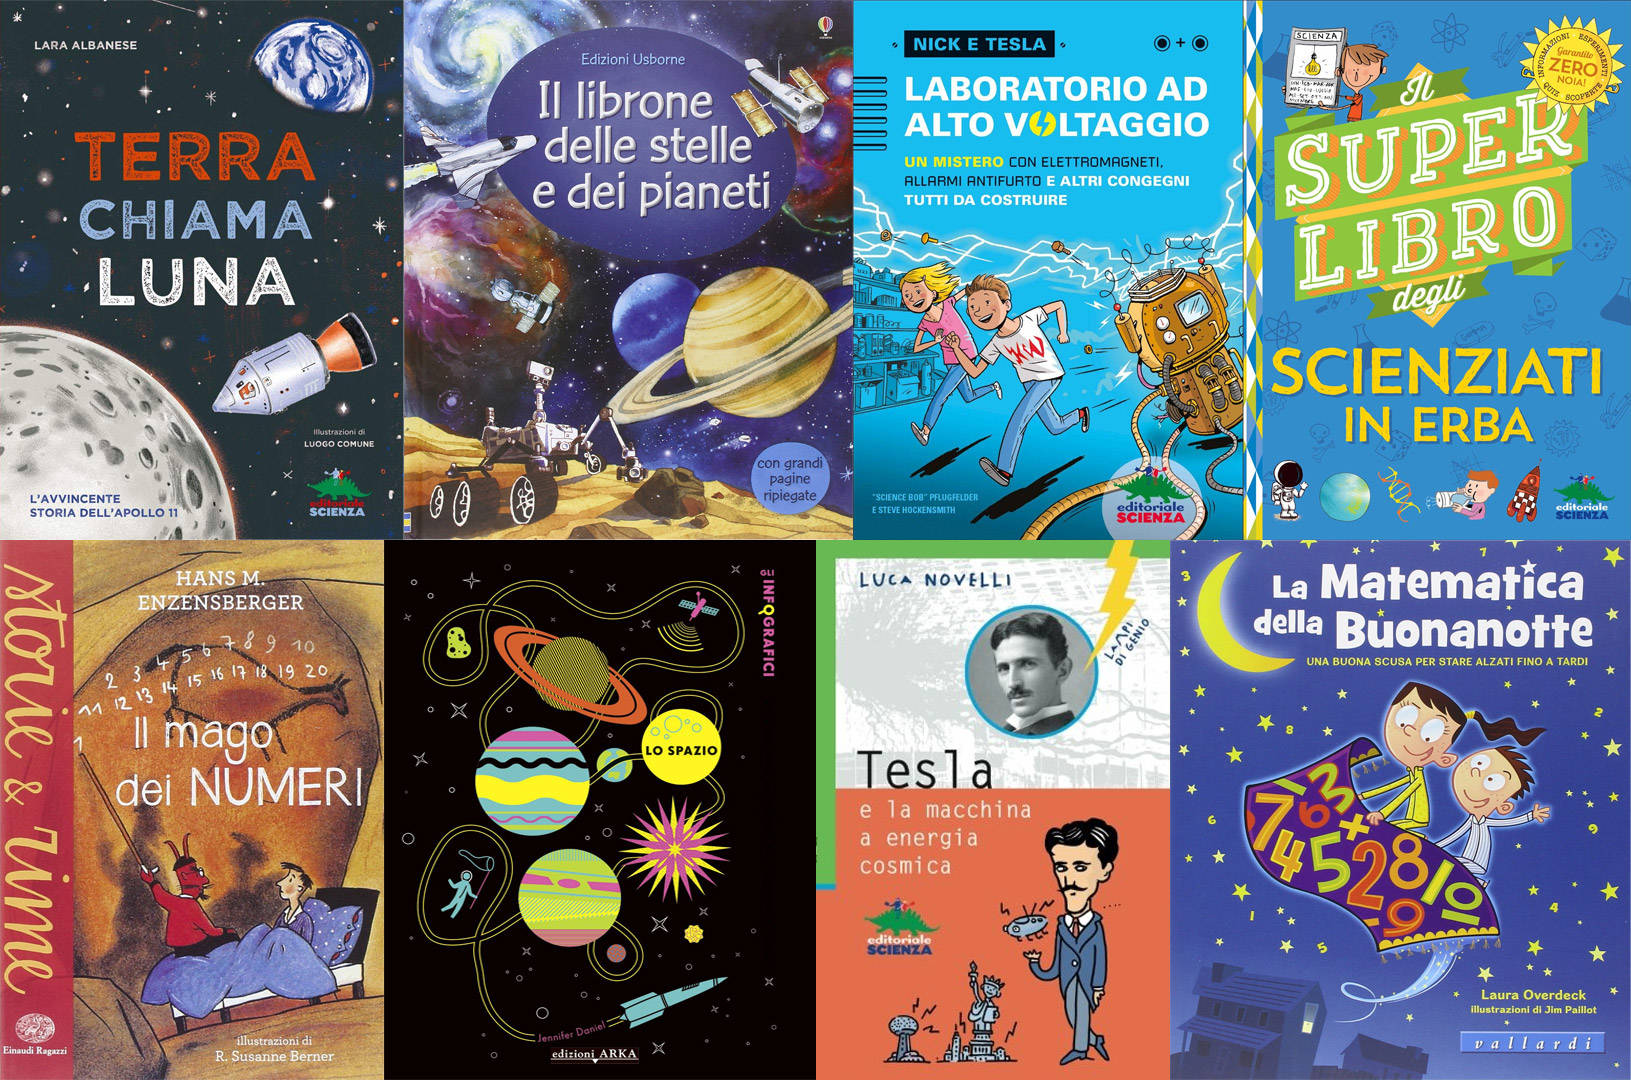 Libri scientifici per bambini  I migliori da leggere nel 2022 - Tom's  Hardware